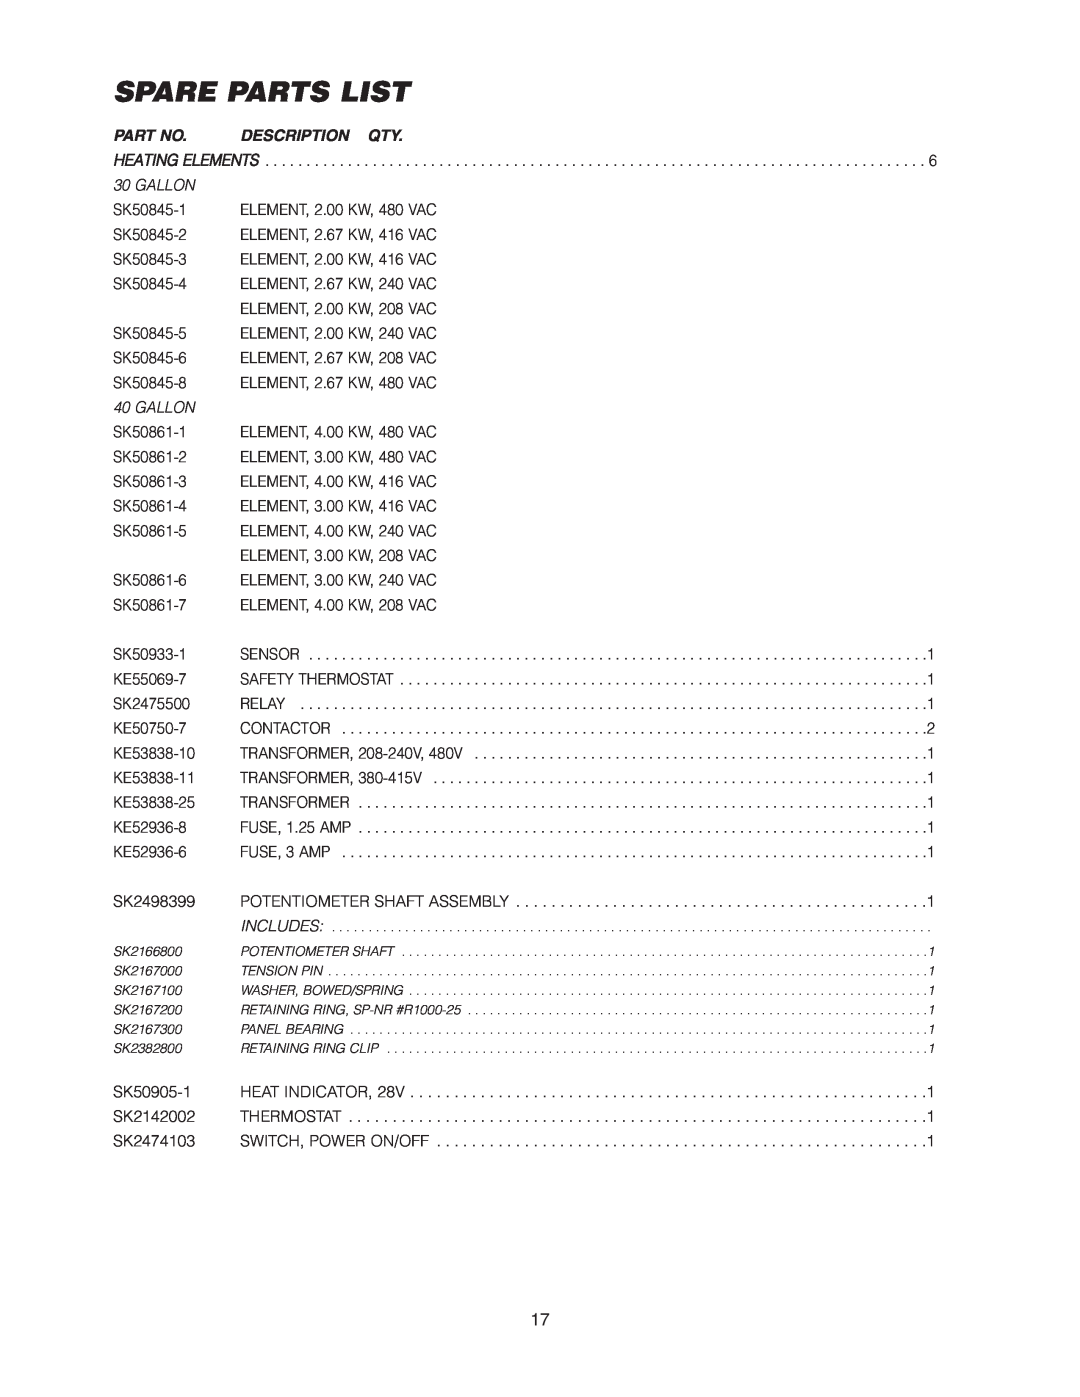 Cleveland Range SEL-30-T1, SEL-40-T1 manual Spare Parts List, Description Qty 